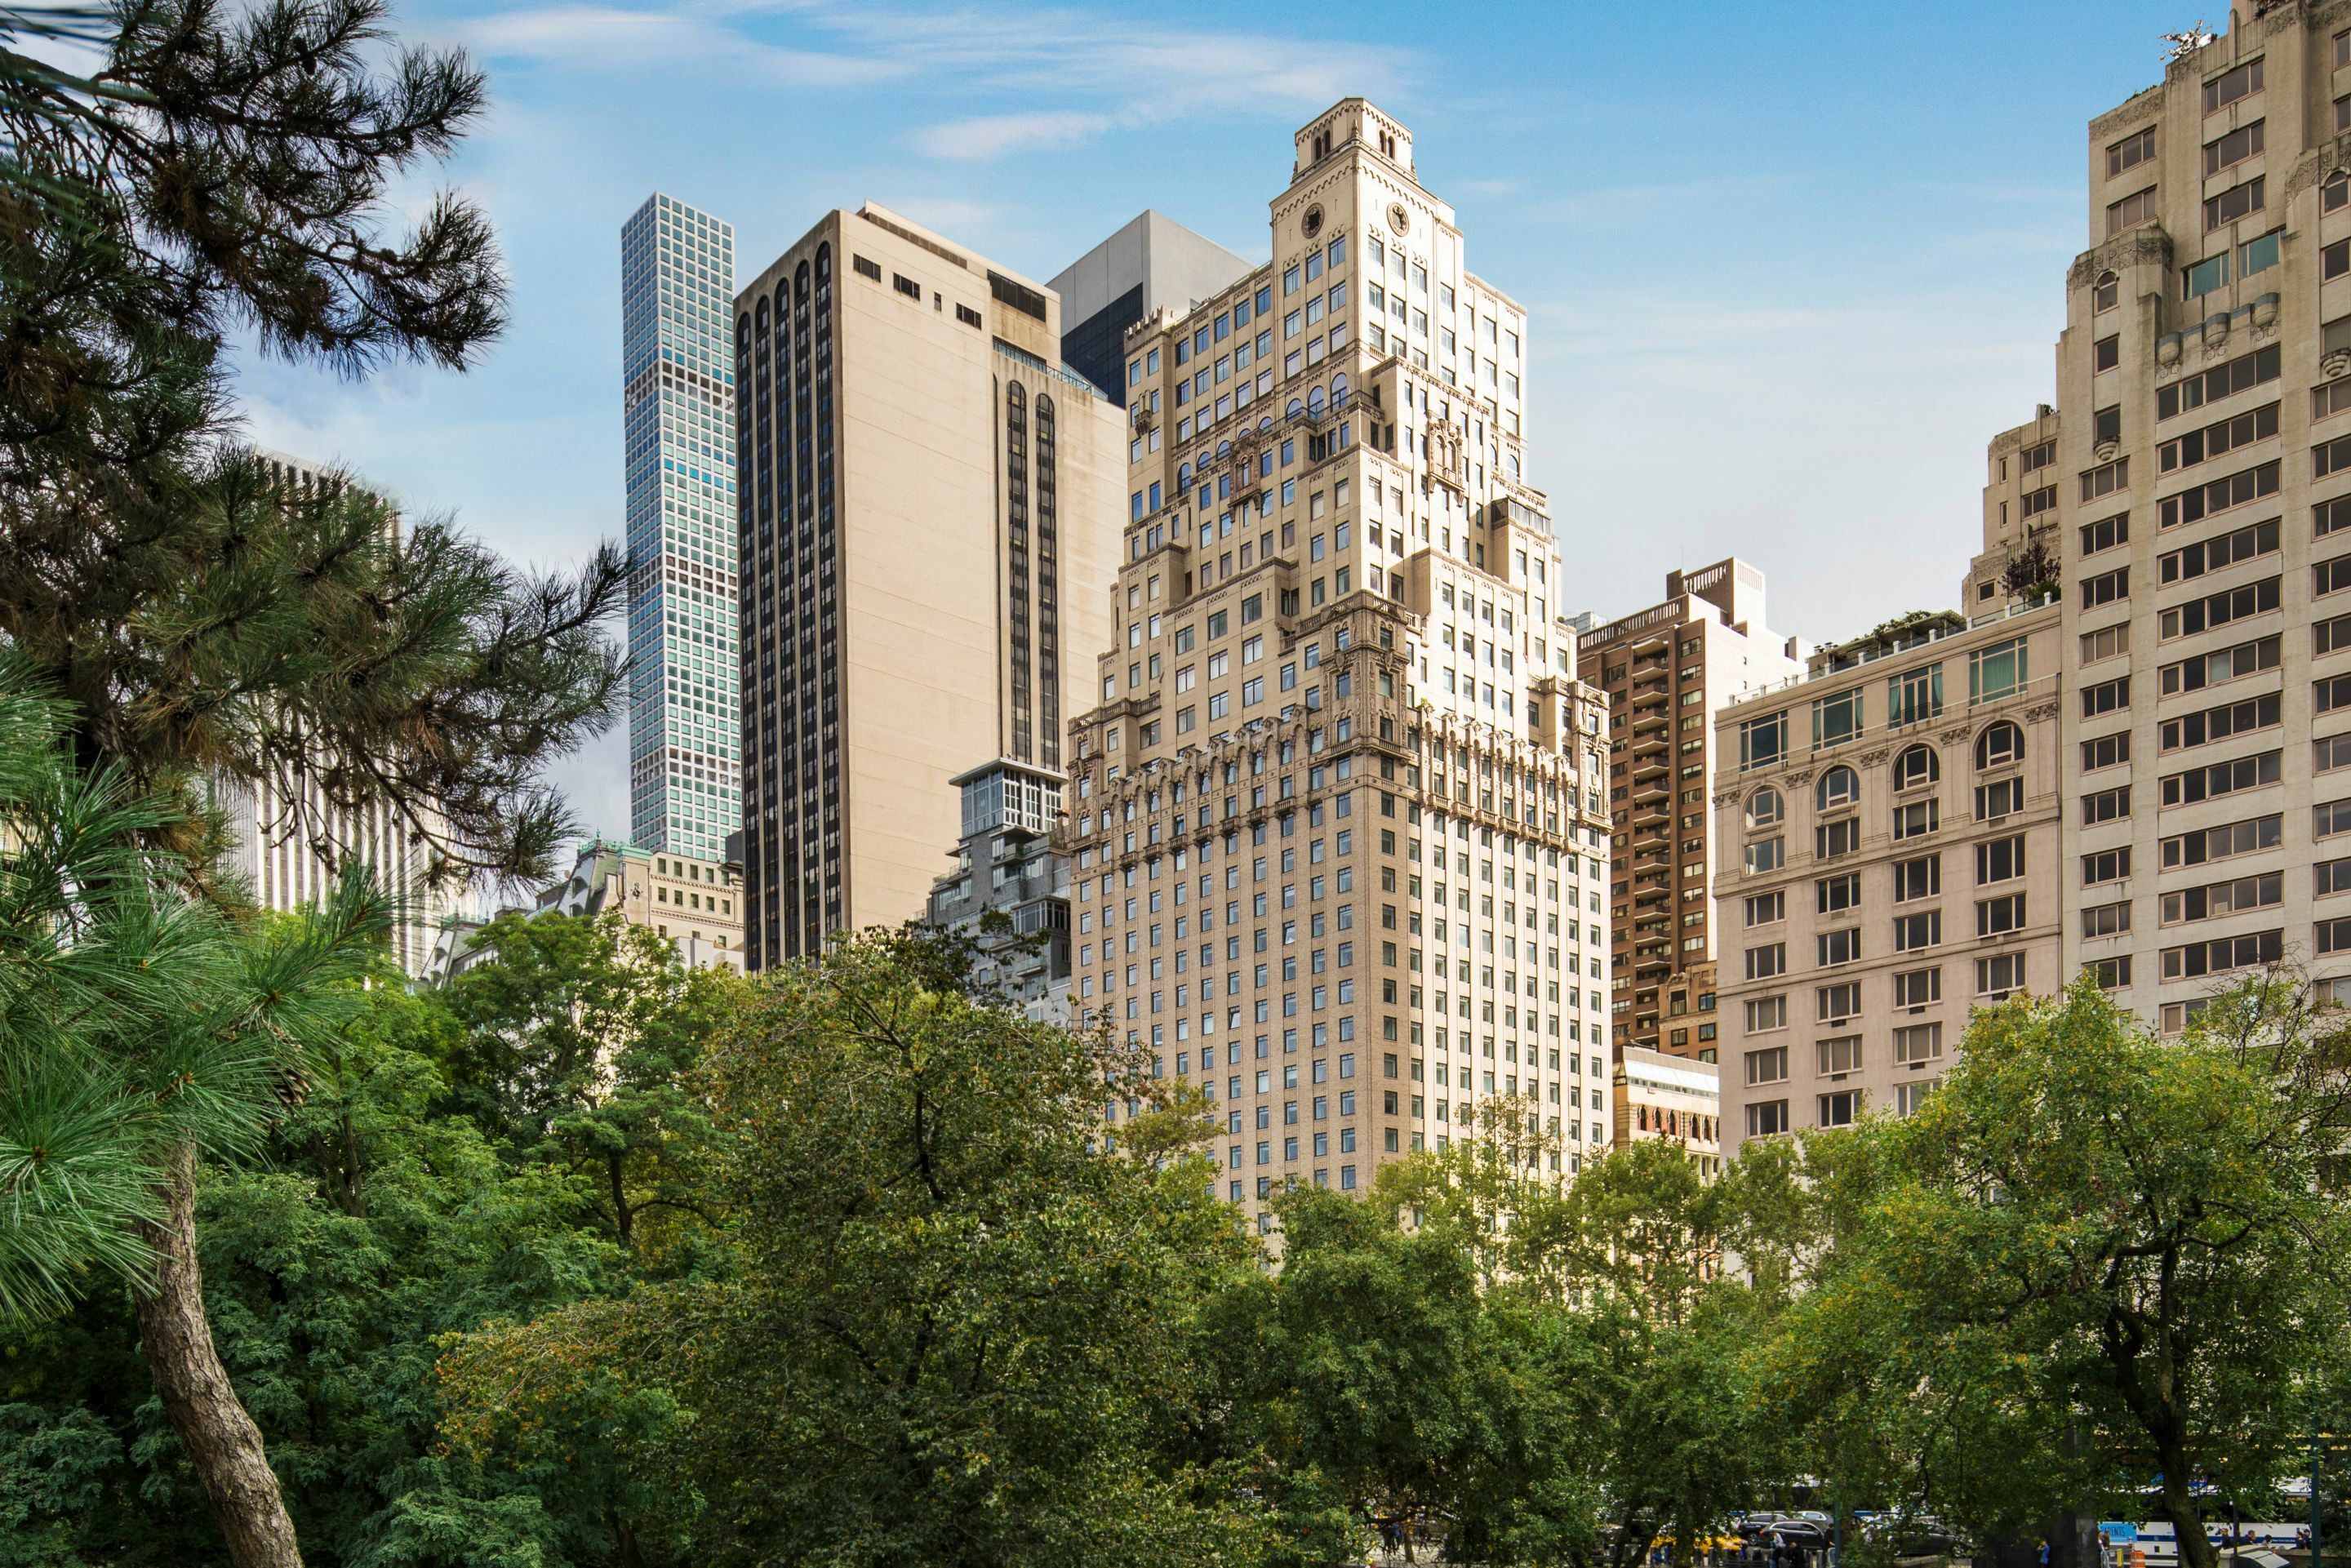 Photo of The Ritz-Carlton New York, Central Park, New York, NY